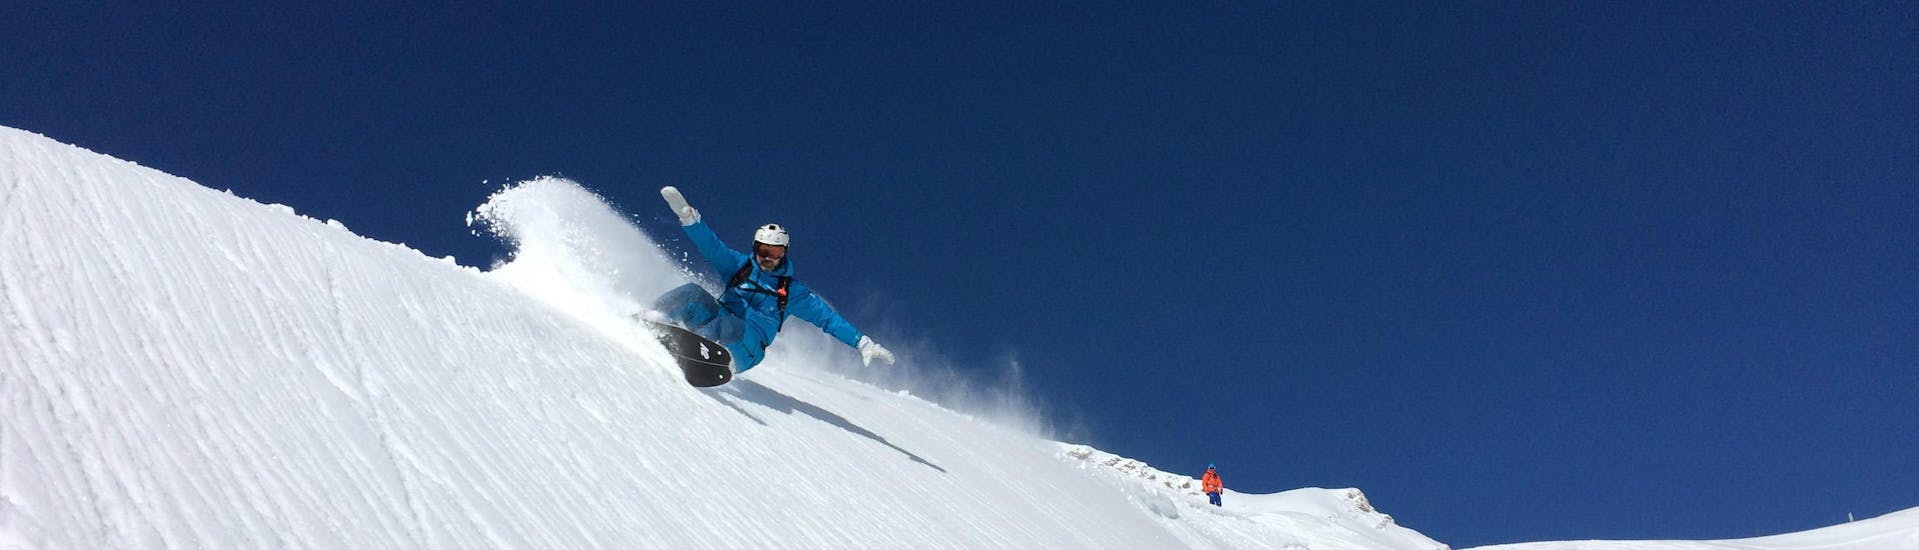 Lezioni private di Snowboard per avanzati.